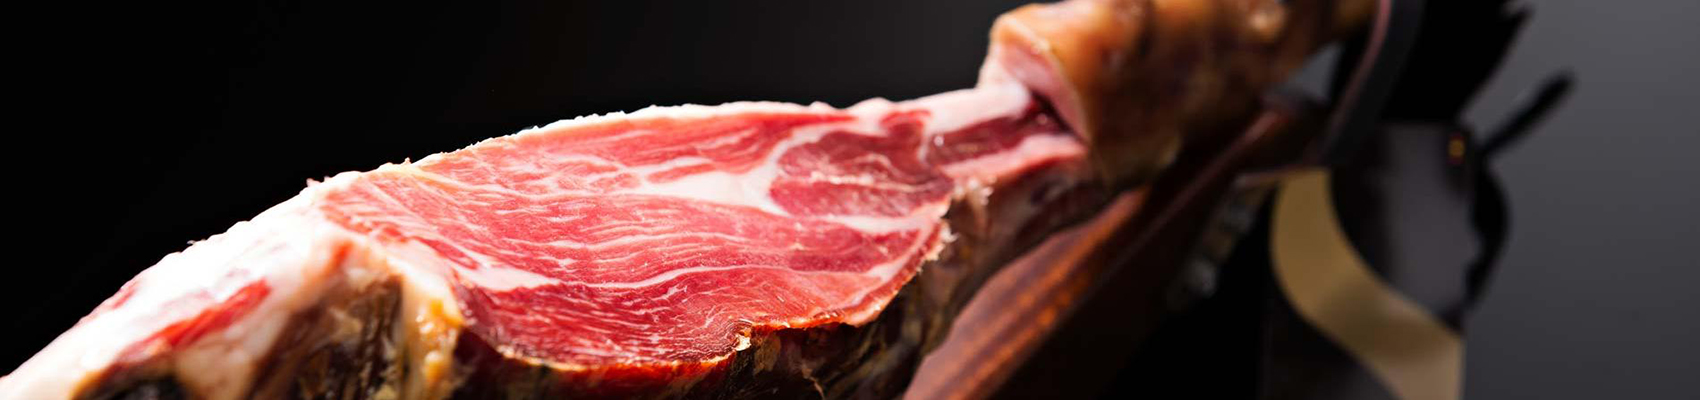 Как хранить вяленое мясо в домашних условиях: полезные рекомендации